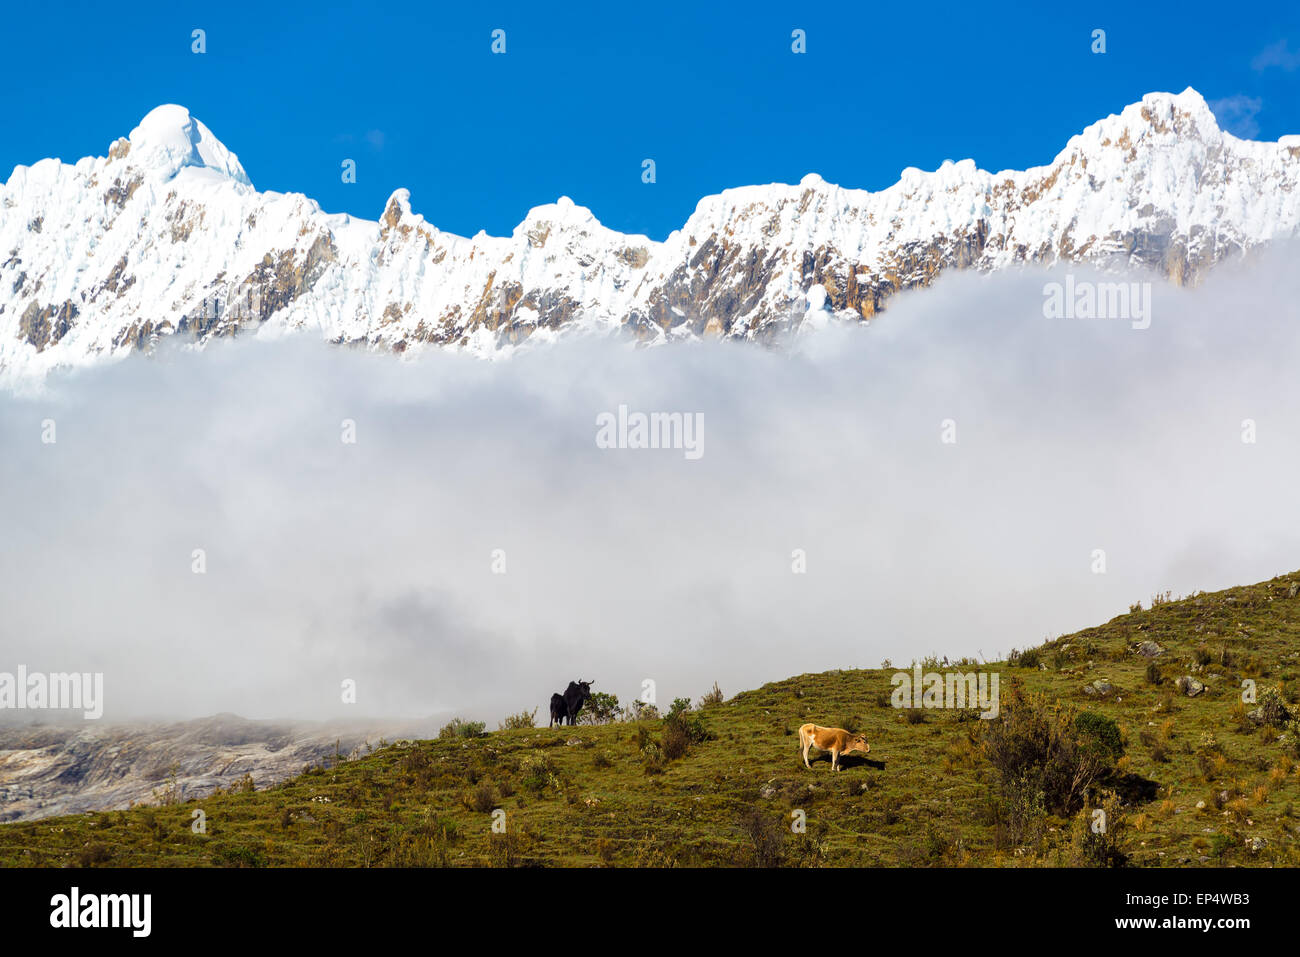 Deux vaches sur une crête avec des sommets enneigés des Andes dans le fond près de Huaraz, Pérou Banque D'Images